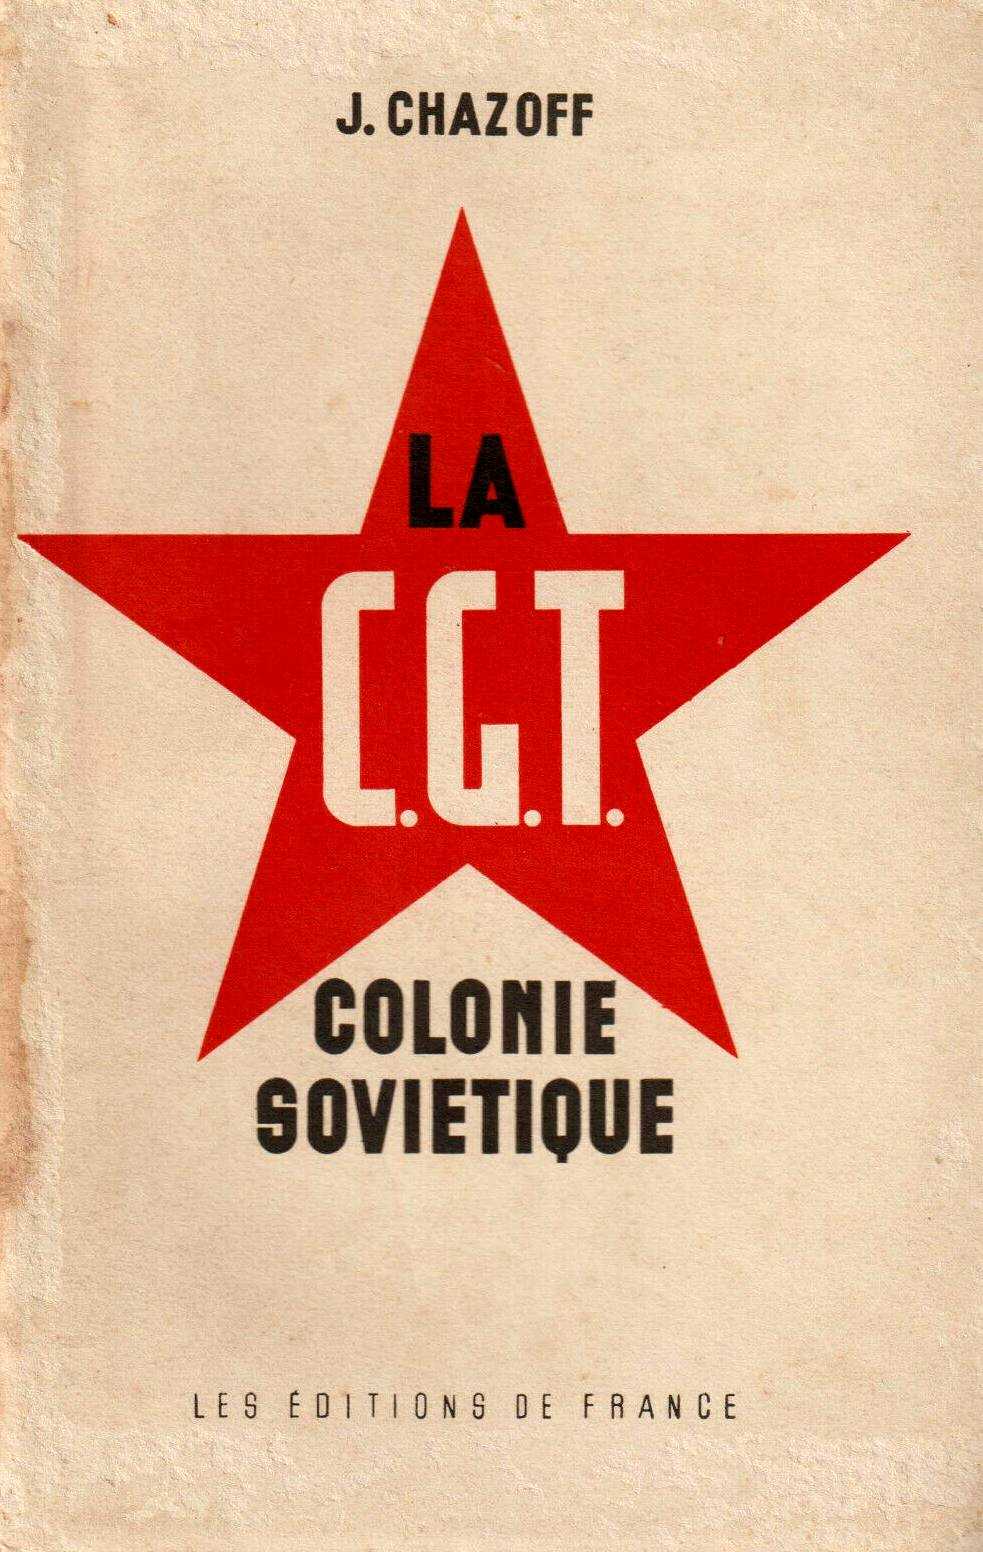 Portada de l'obra de Chazoff "La CGT, colonie soviétique" (1939)